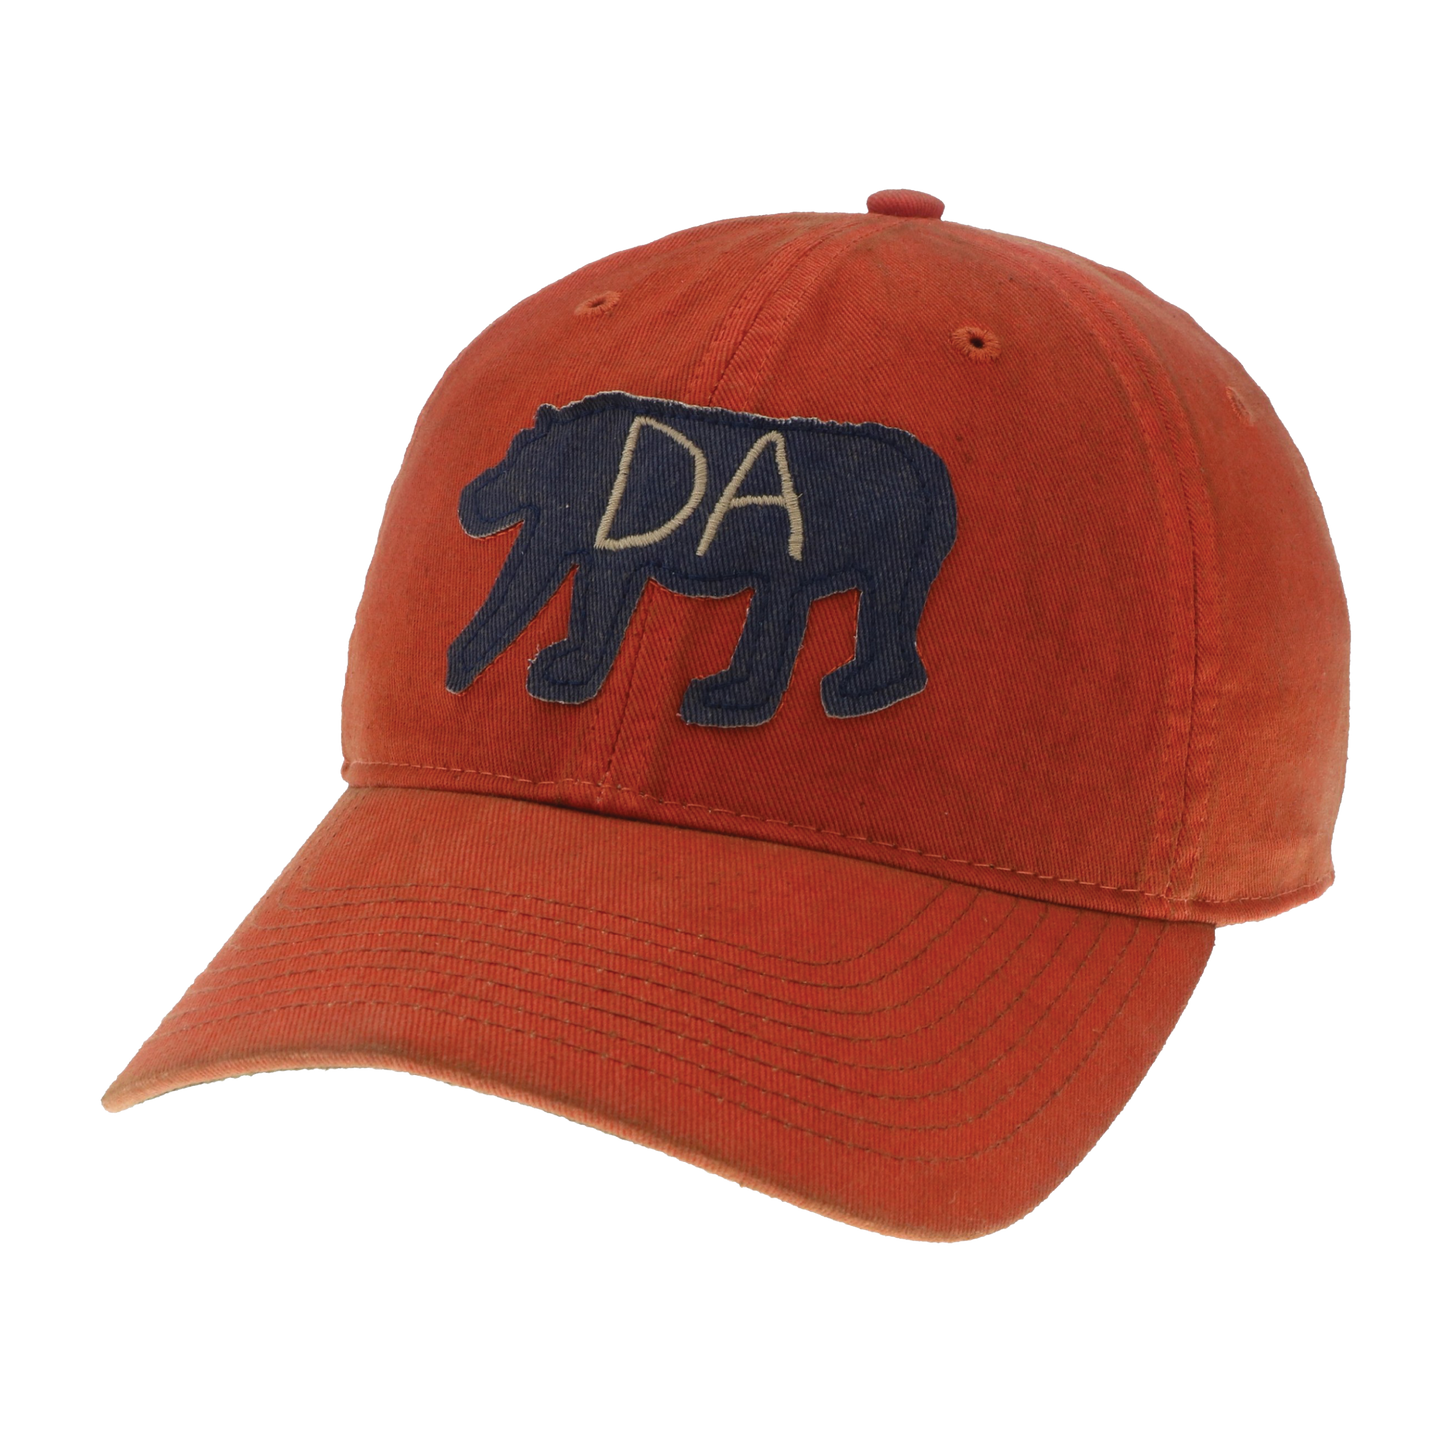 Da Bear® Old Favorite Hat in Orange